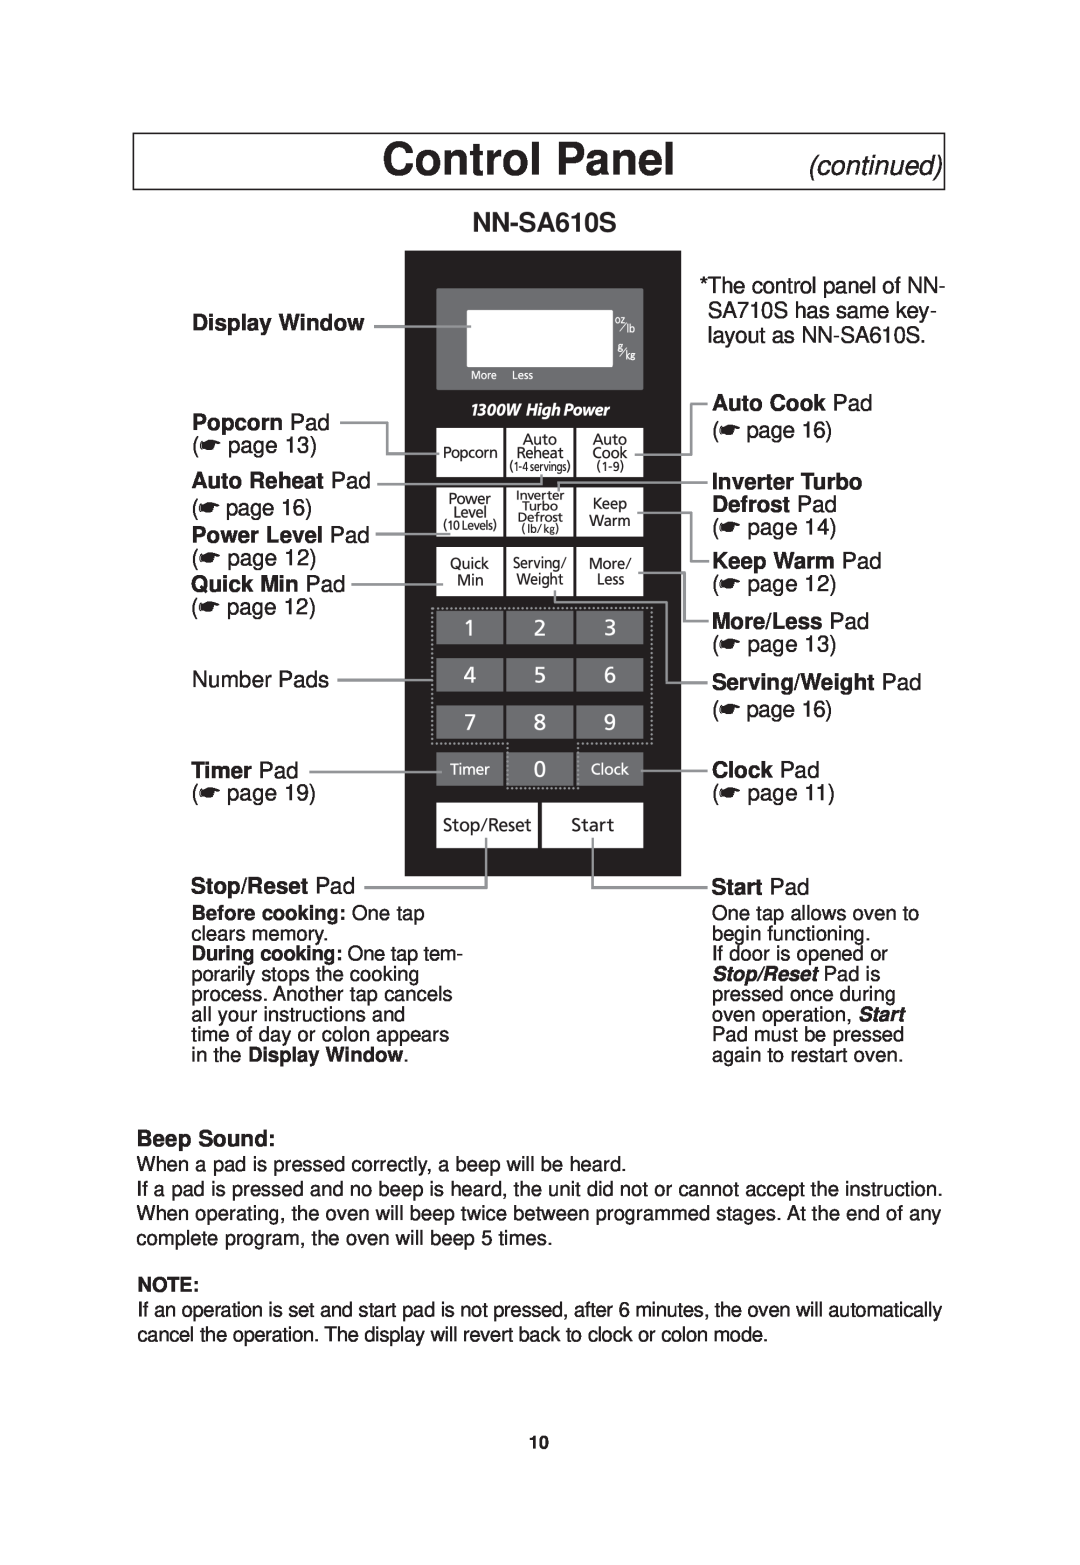 Panasonic NN-SA710S operating instructions Control Panel, NN-SA610S, continued 